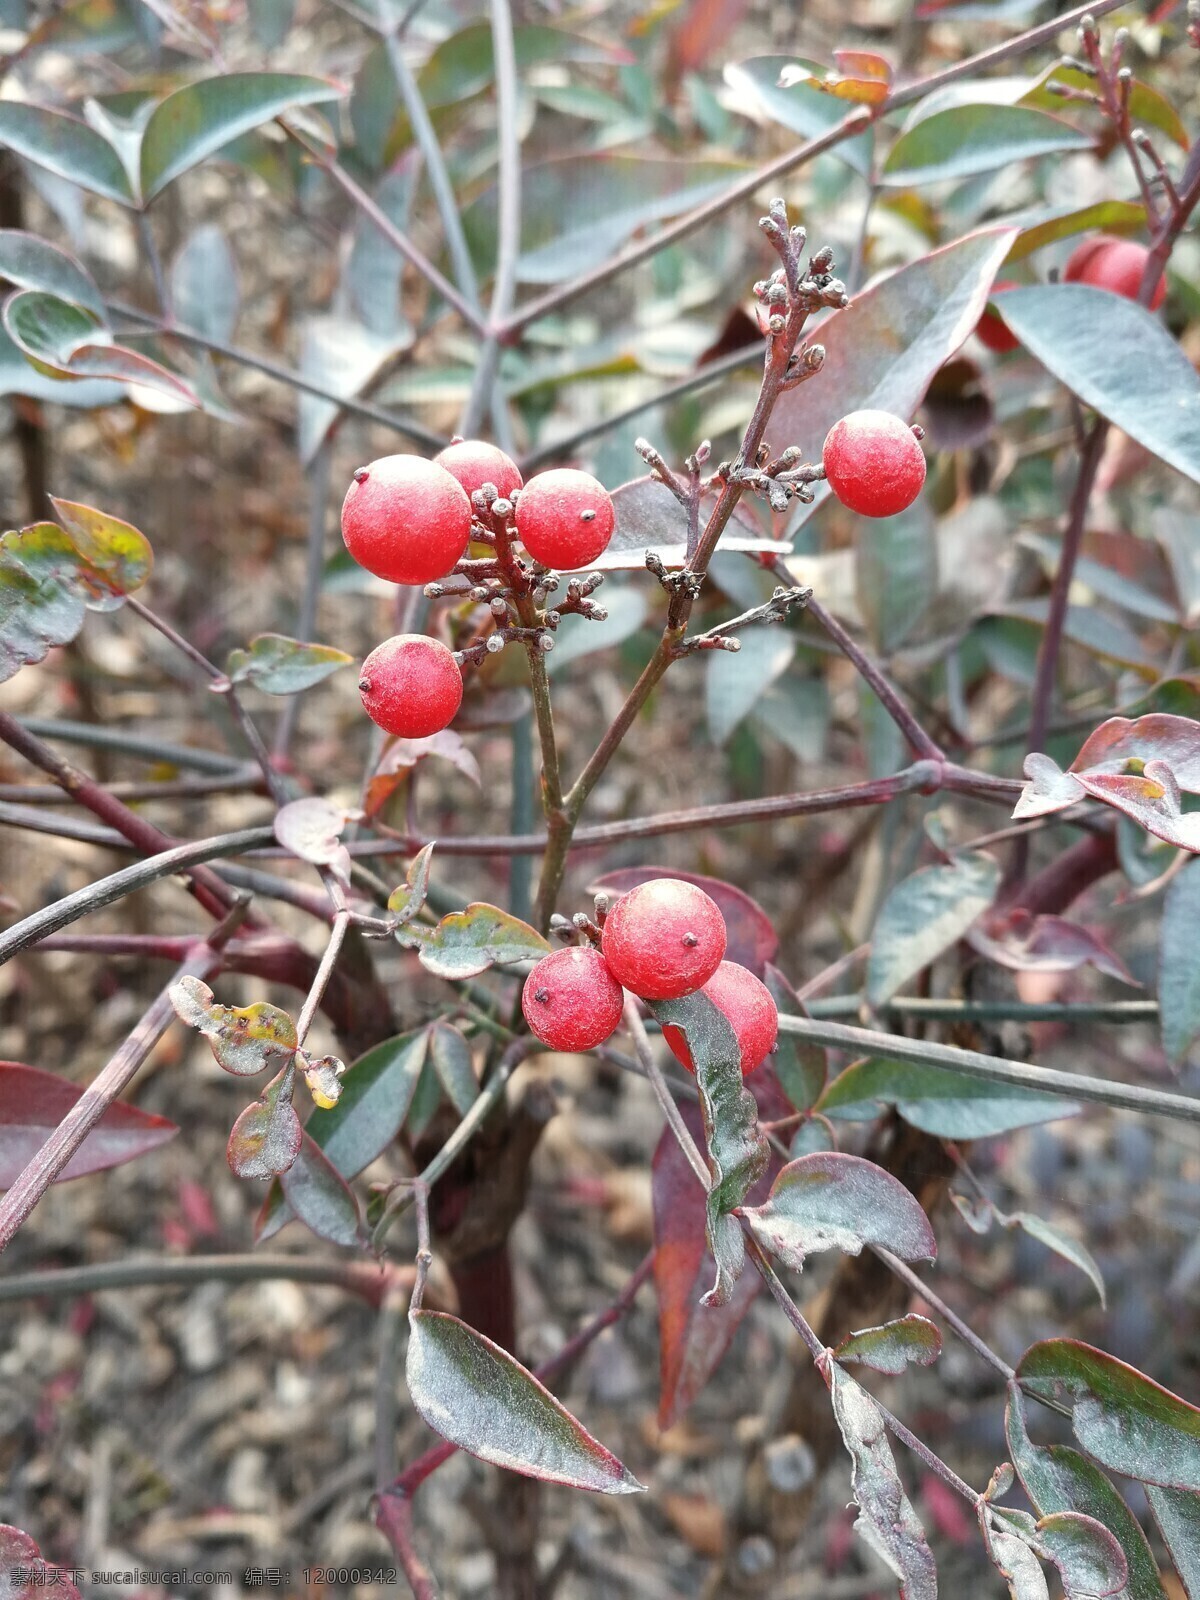 初冬红果 红果 冬季植物 果实 红红的果实 旅游摄影 自然风景